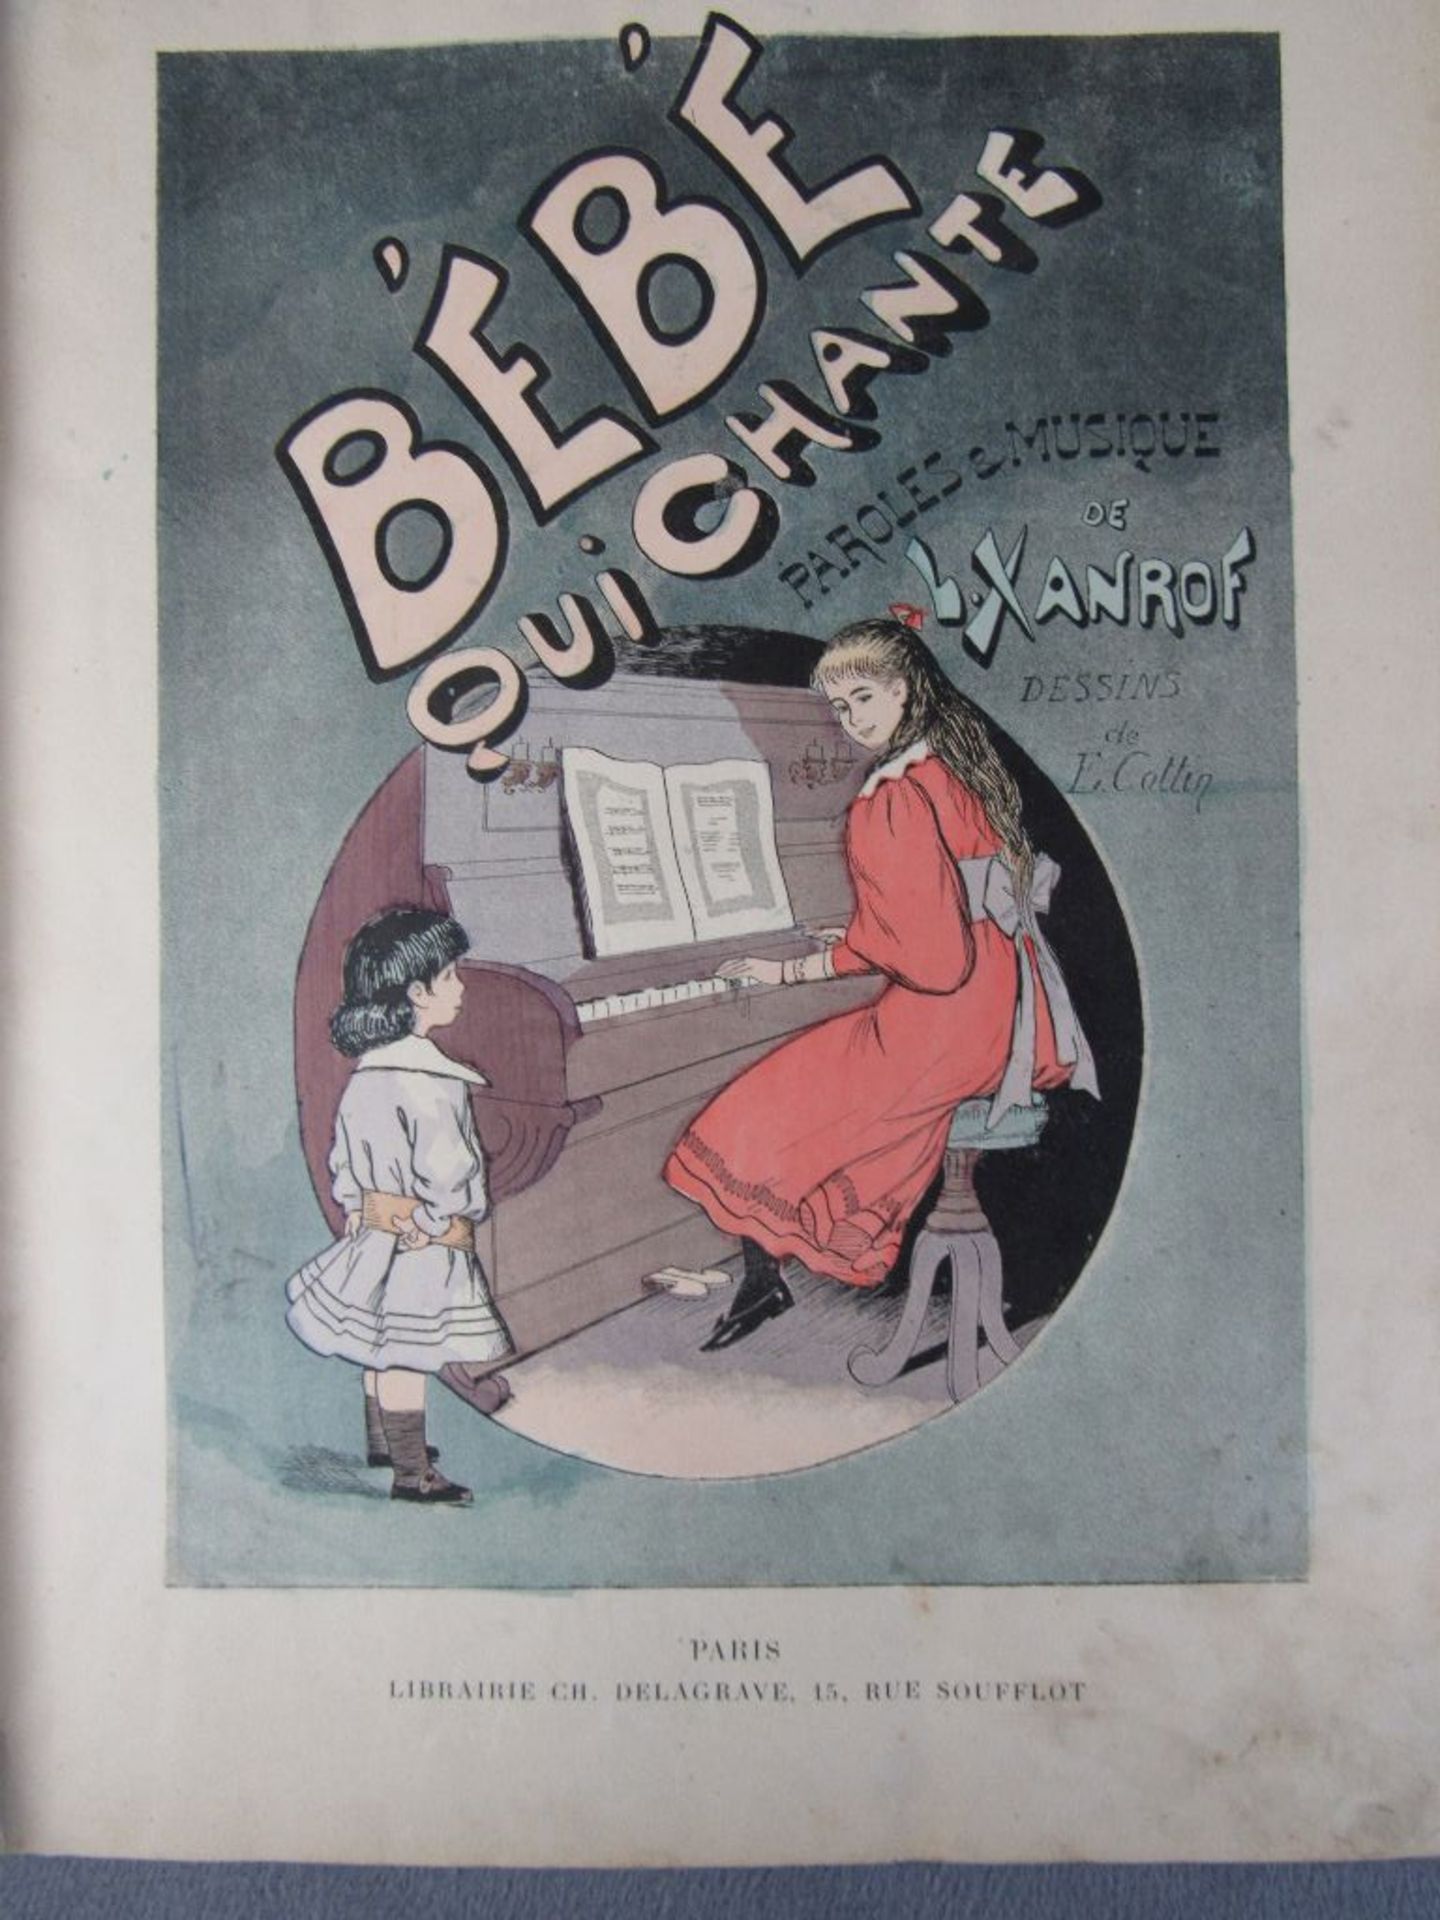 Zwei Bücher mit zahlreichen Illustrationen 1. bebe qui chante de L. xanrof dessins de E. Collin - Bild 4 aus 7